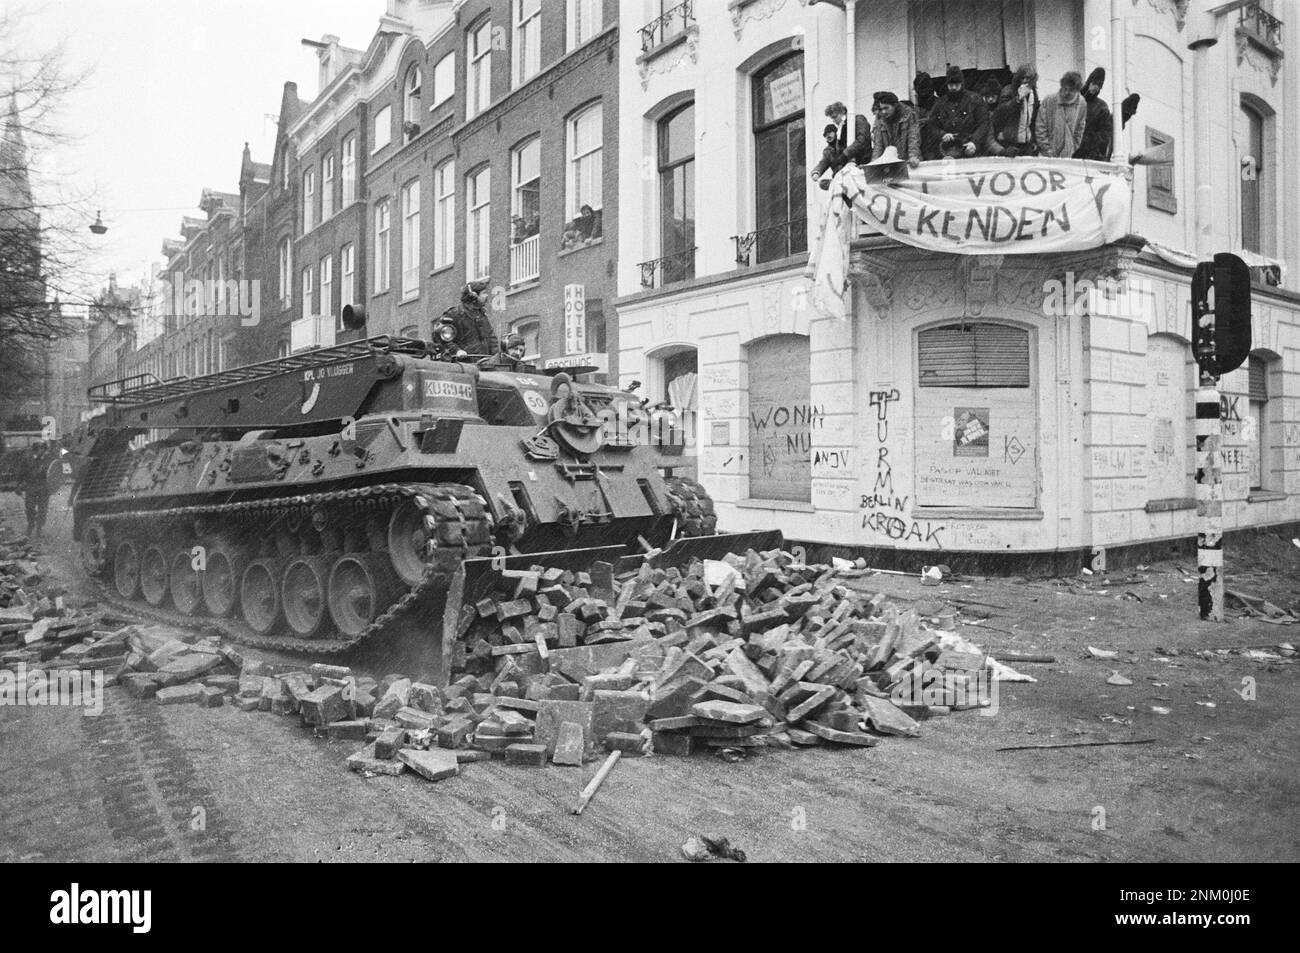 Niederländische Geschichte: Polizei und Armee mit gepanzerten Fahrzeugen und Panzern räumen Barrikaden in Vondelbuurt, Amsterdam (Hausbesetzungsunruhen) ca. 3. März 1980 Stockfoto